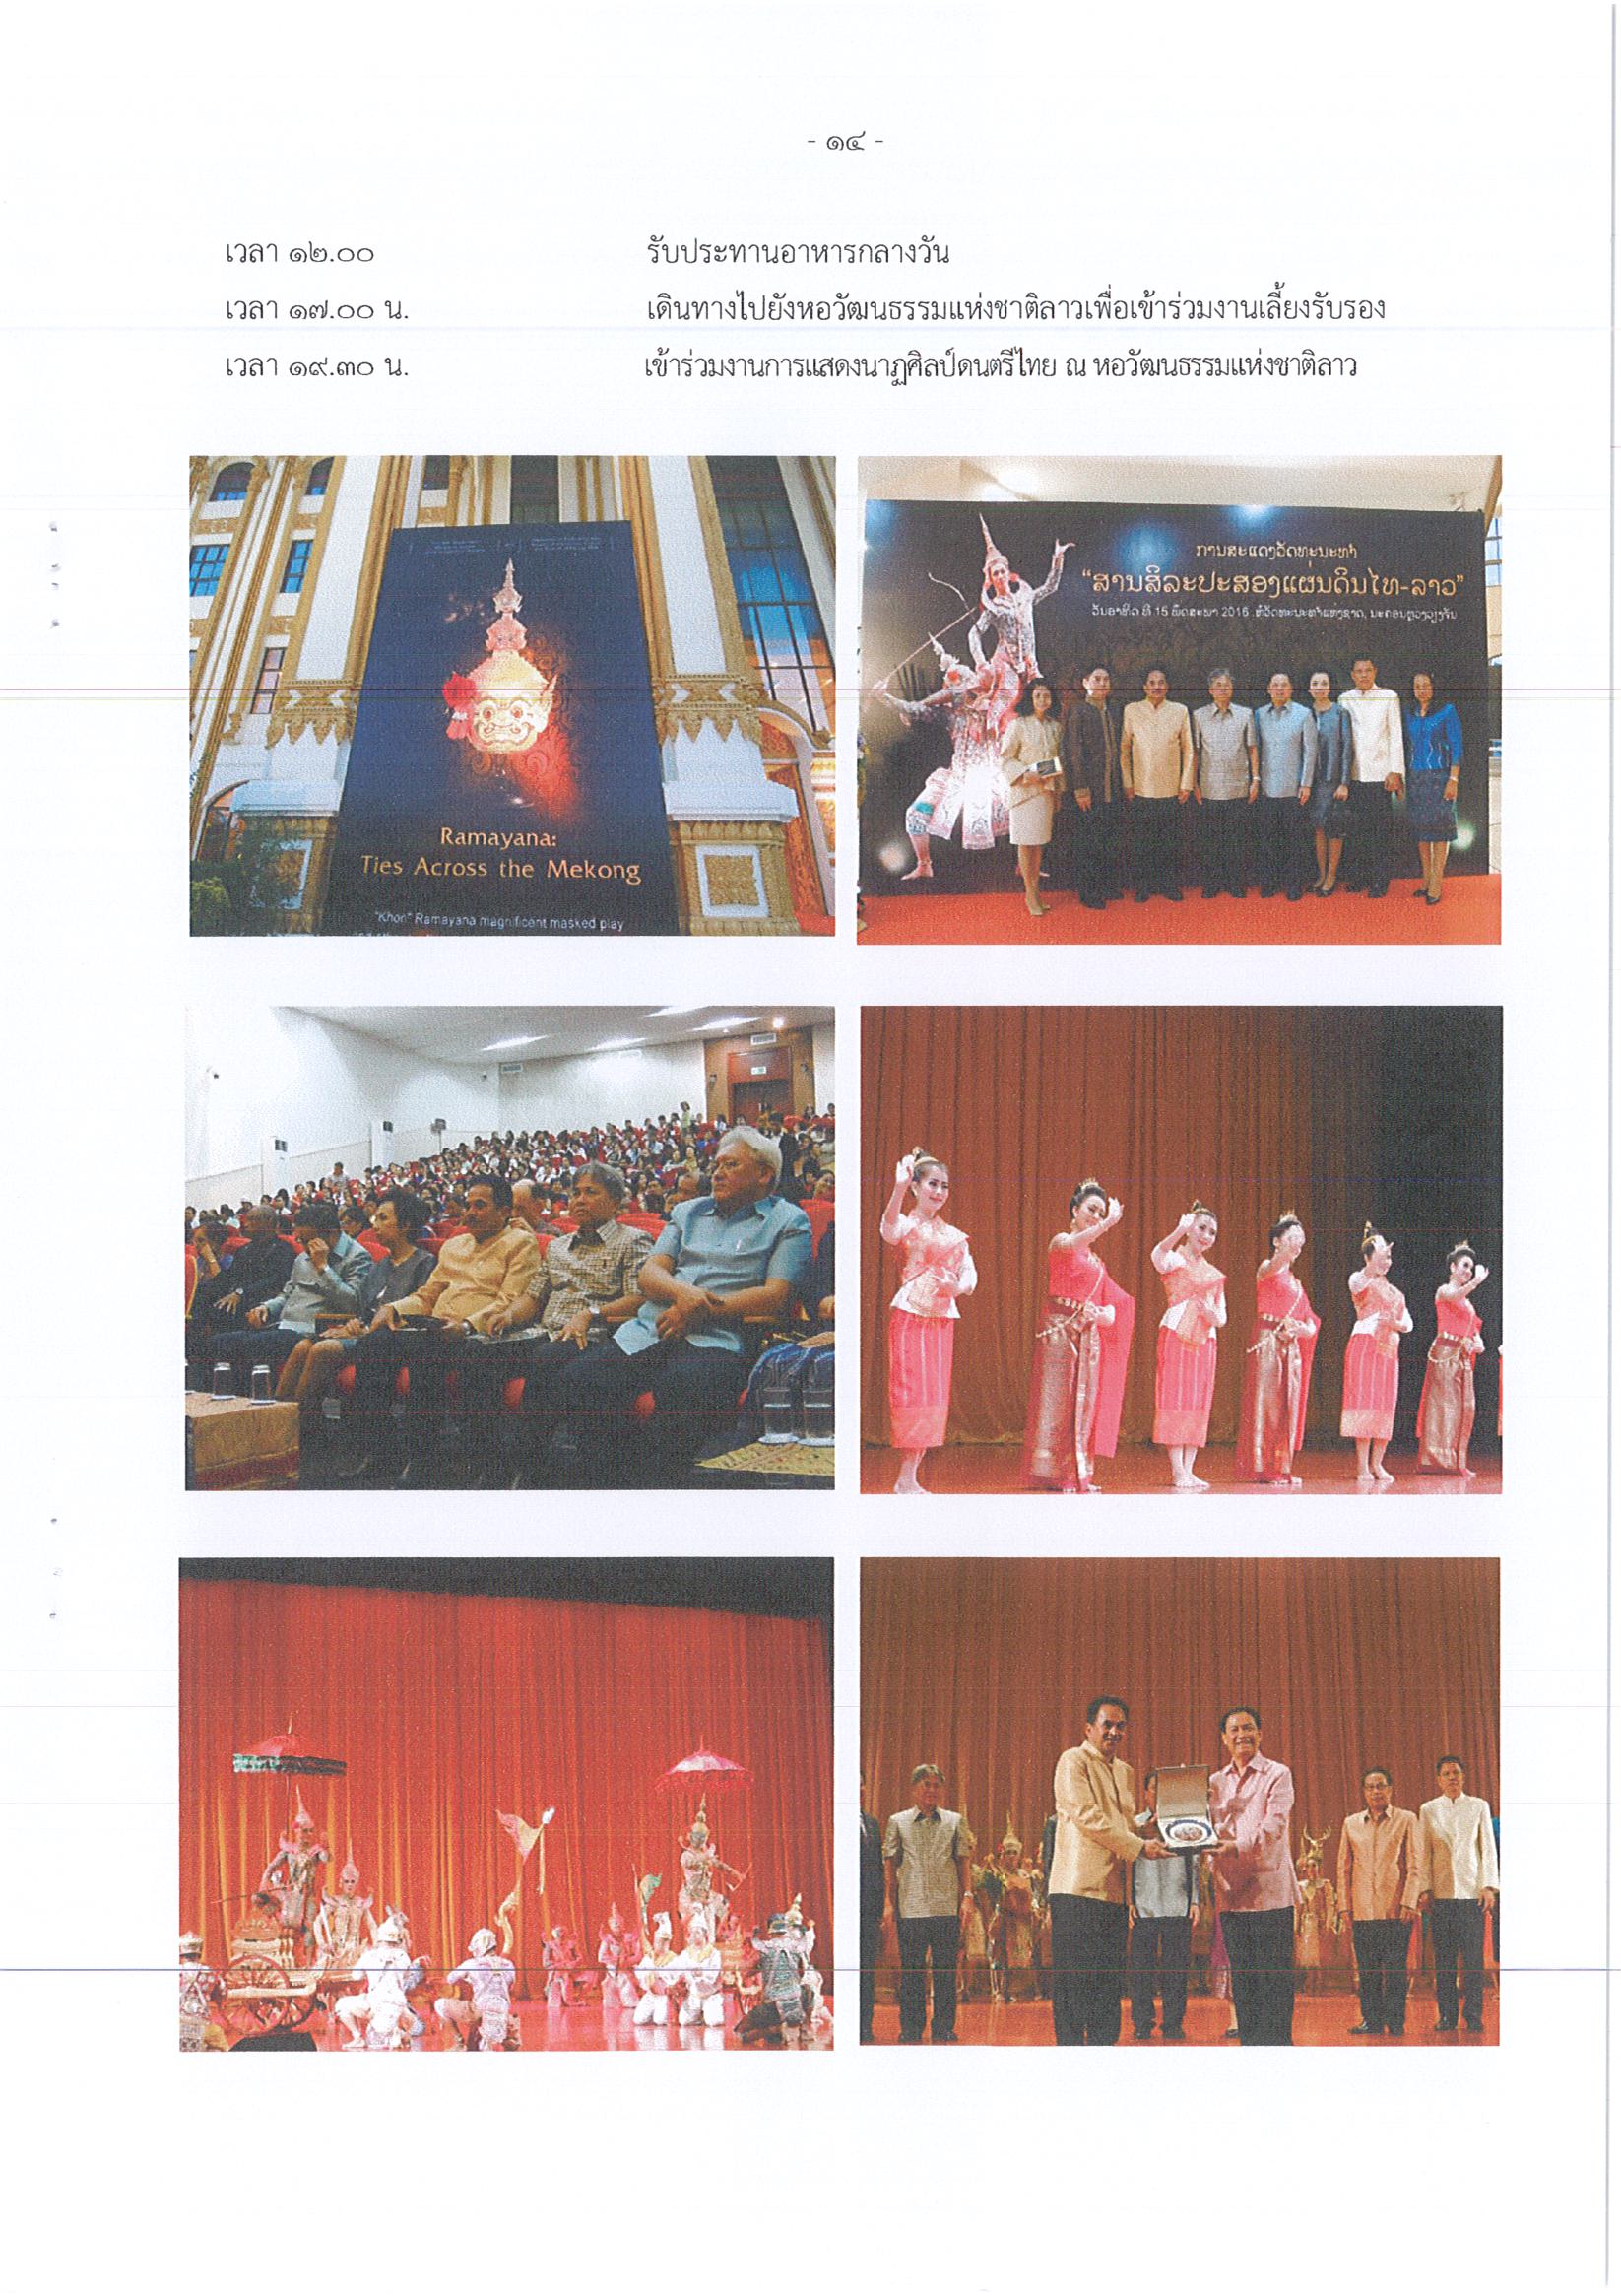 รายงานการเดินทางไปราชาร ณ สาธารณรัฐประชาธิปไตยประชาชนลาว ระหว่างวันที่ 14 – 16 พฤษภาคม 2559 โครงการมหกรรมการแสดงด้านนาฏศิลป์ ดุริยางคศิลป์ และดนตรีแบบบูรณาการ ปีงบประมาณ 2559 การจัดงานเผยแพร่แลกเปลี่ยนนาฏศิลป์ – ดนตรี ณ หอวัฒนธรรมแห่งชาติลาว นครหลวงเวียงจันทน์